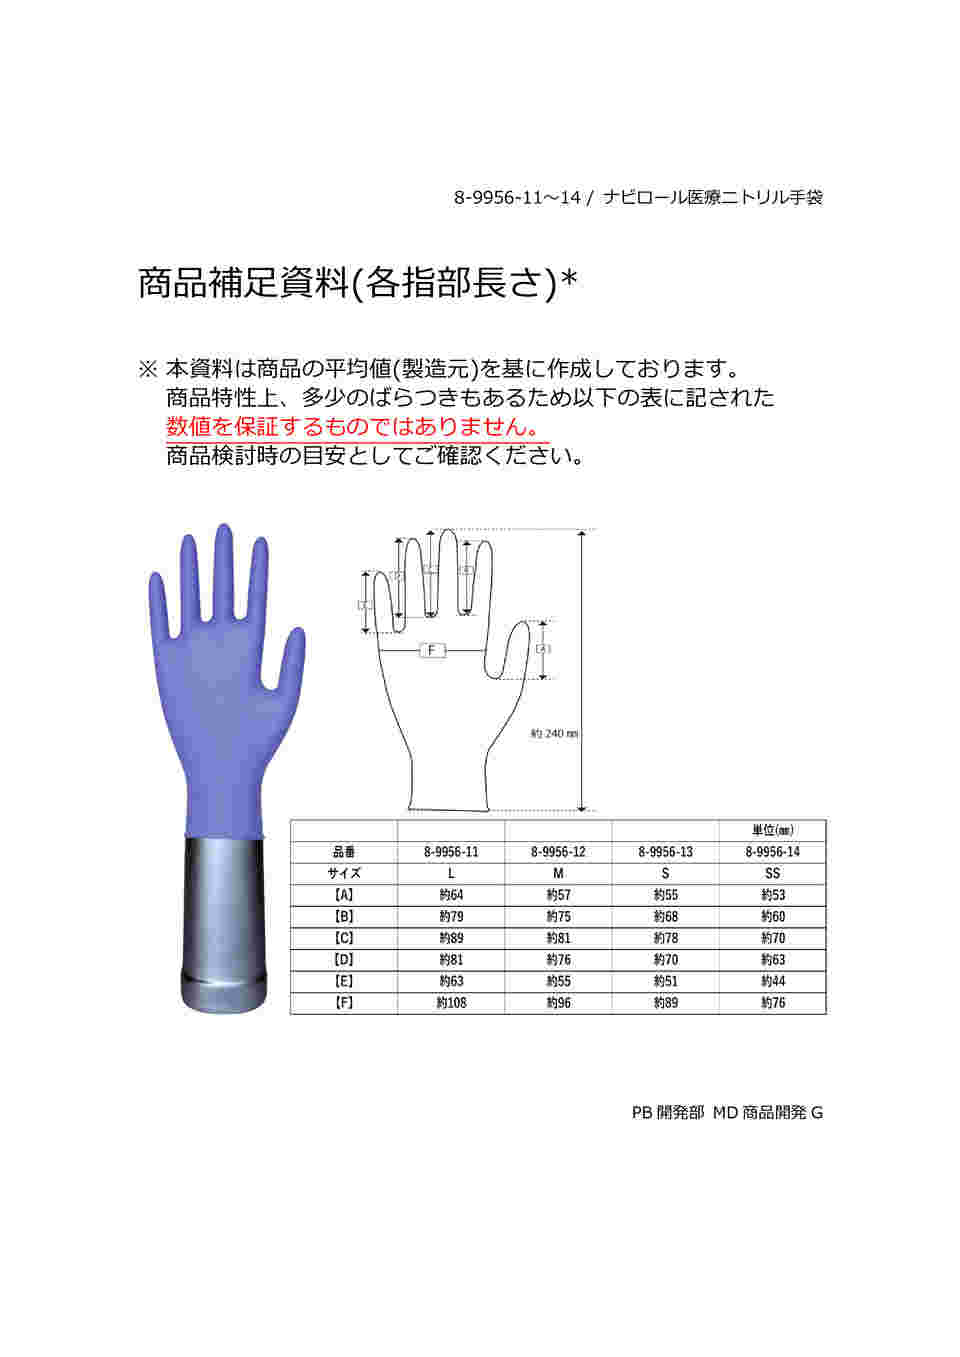 8-9956-13 ナビロール医療ニトリル手袋（パウダーフリー） S 100枚 【AXEL】 アズワン